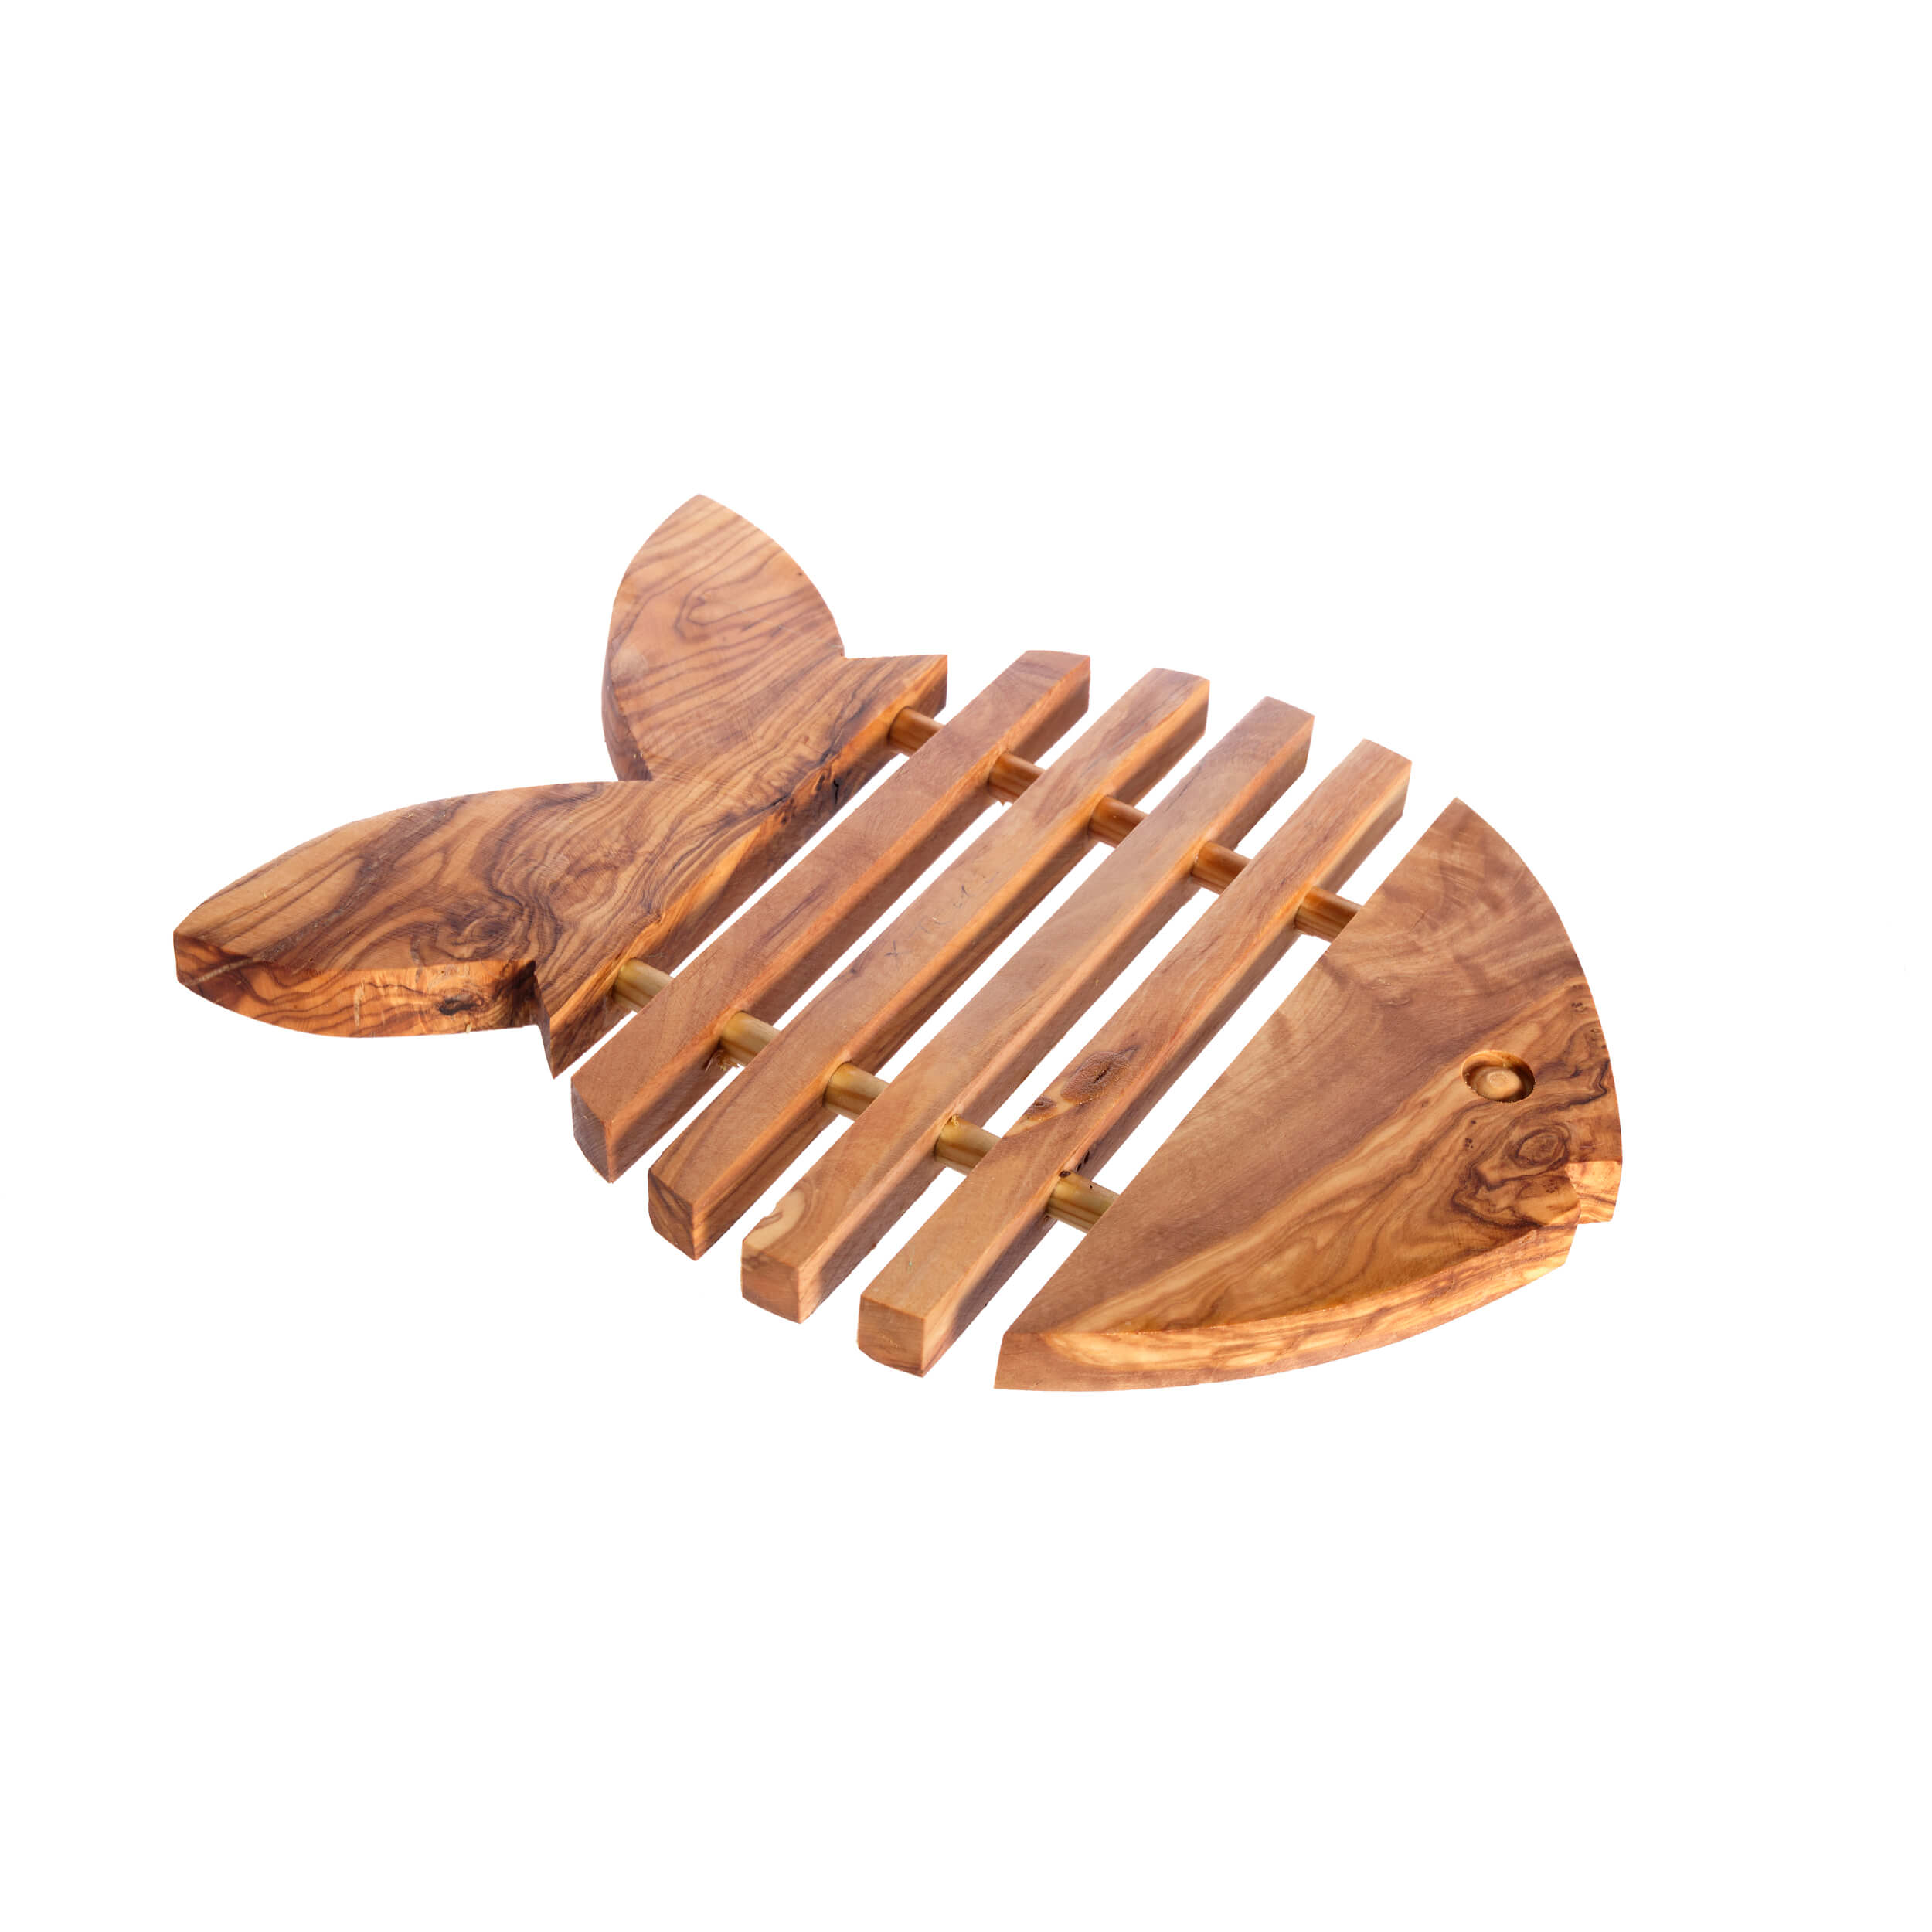 Σουπλά σε Σχήμα Ψαριού 'Mavridis Wooden Products' 560gr